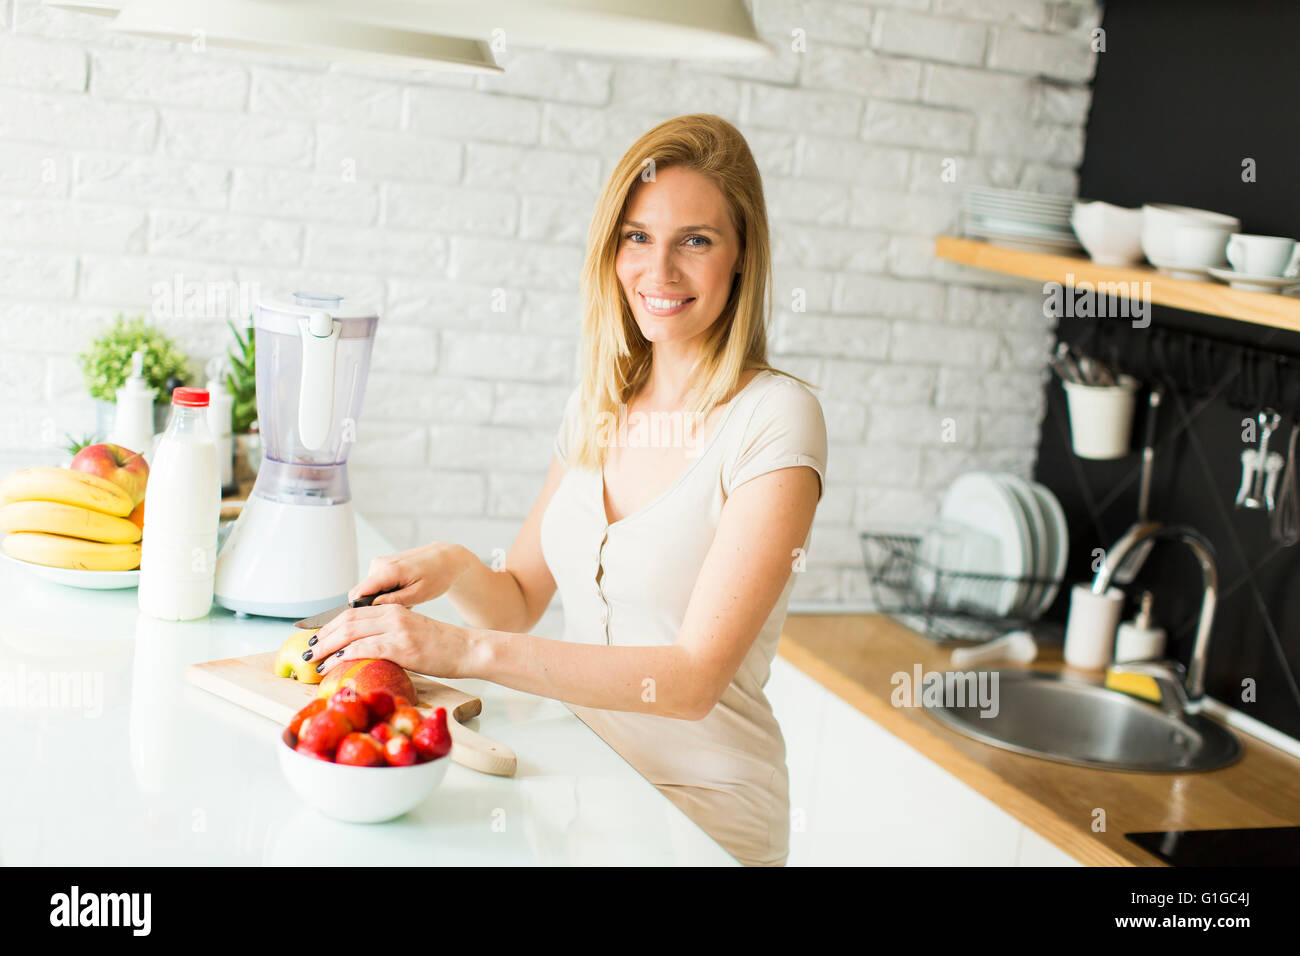 Jolie jeune femme la préparation des fruits dans la cuisine moderne Banque D'Images